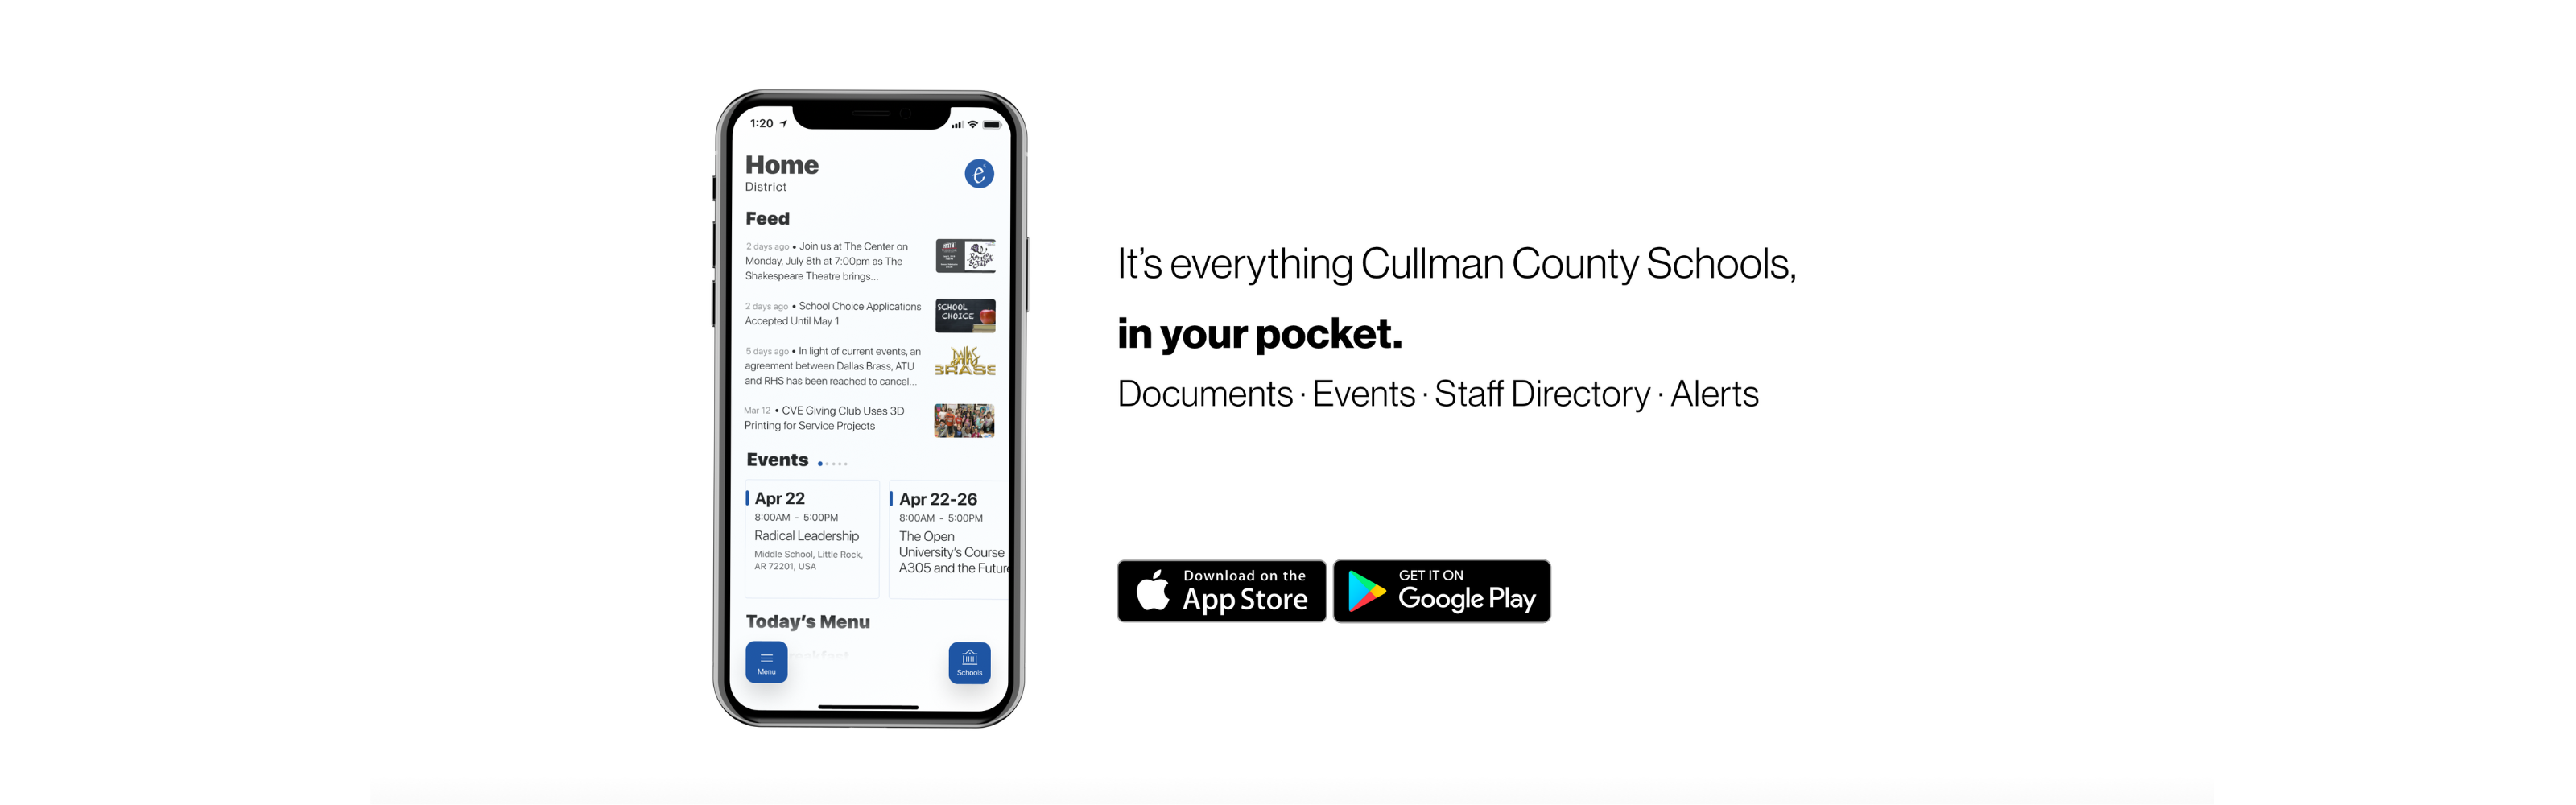 Cullman County Schools App Image